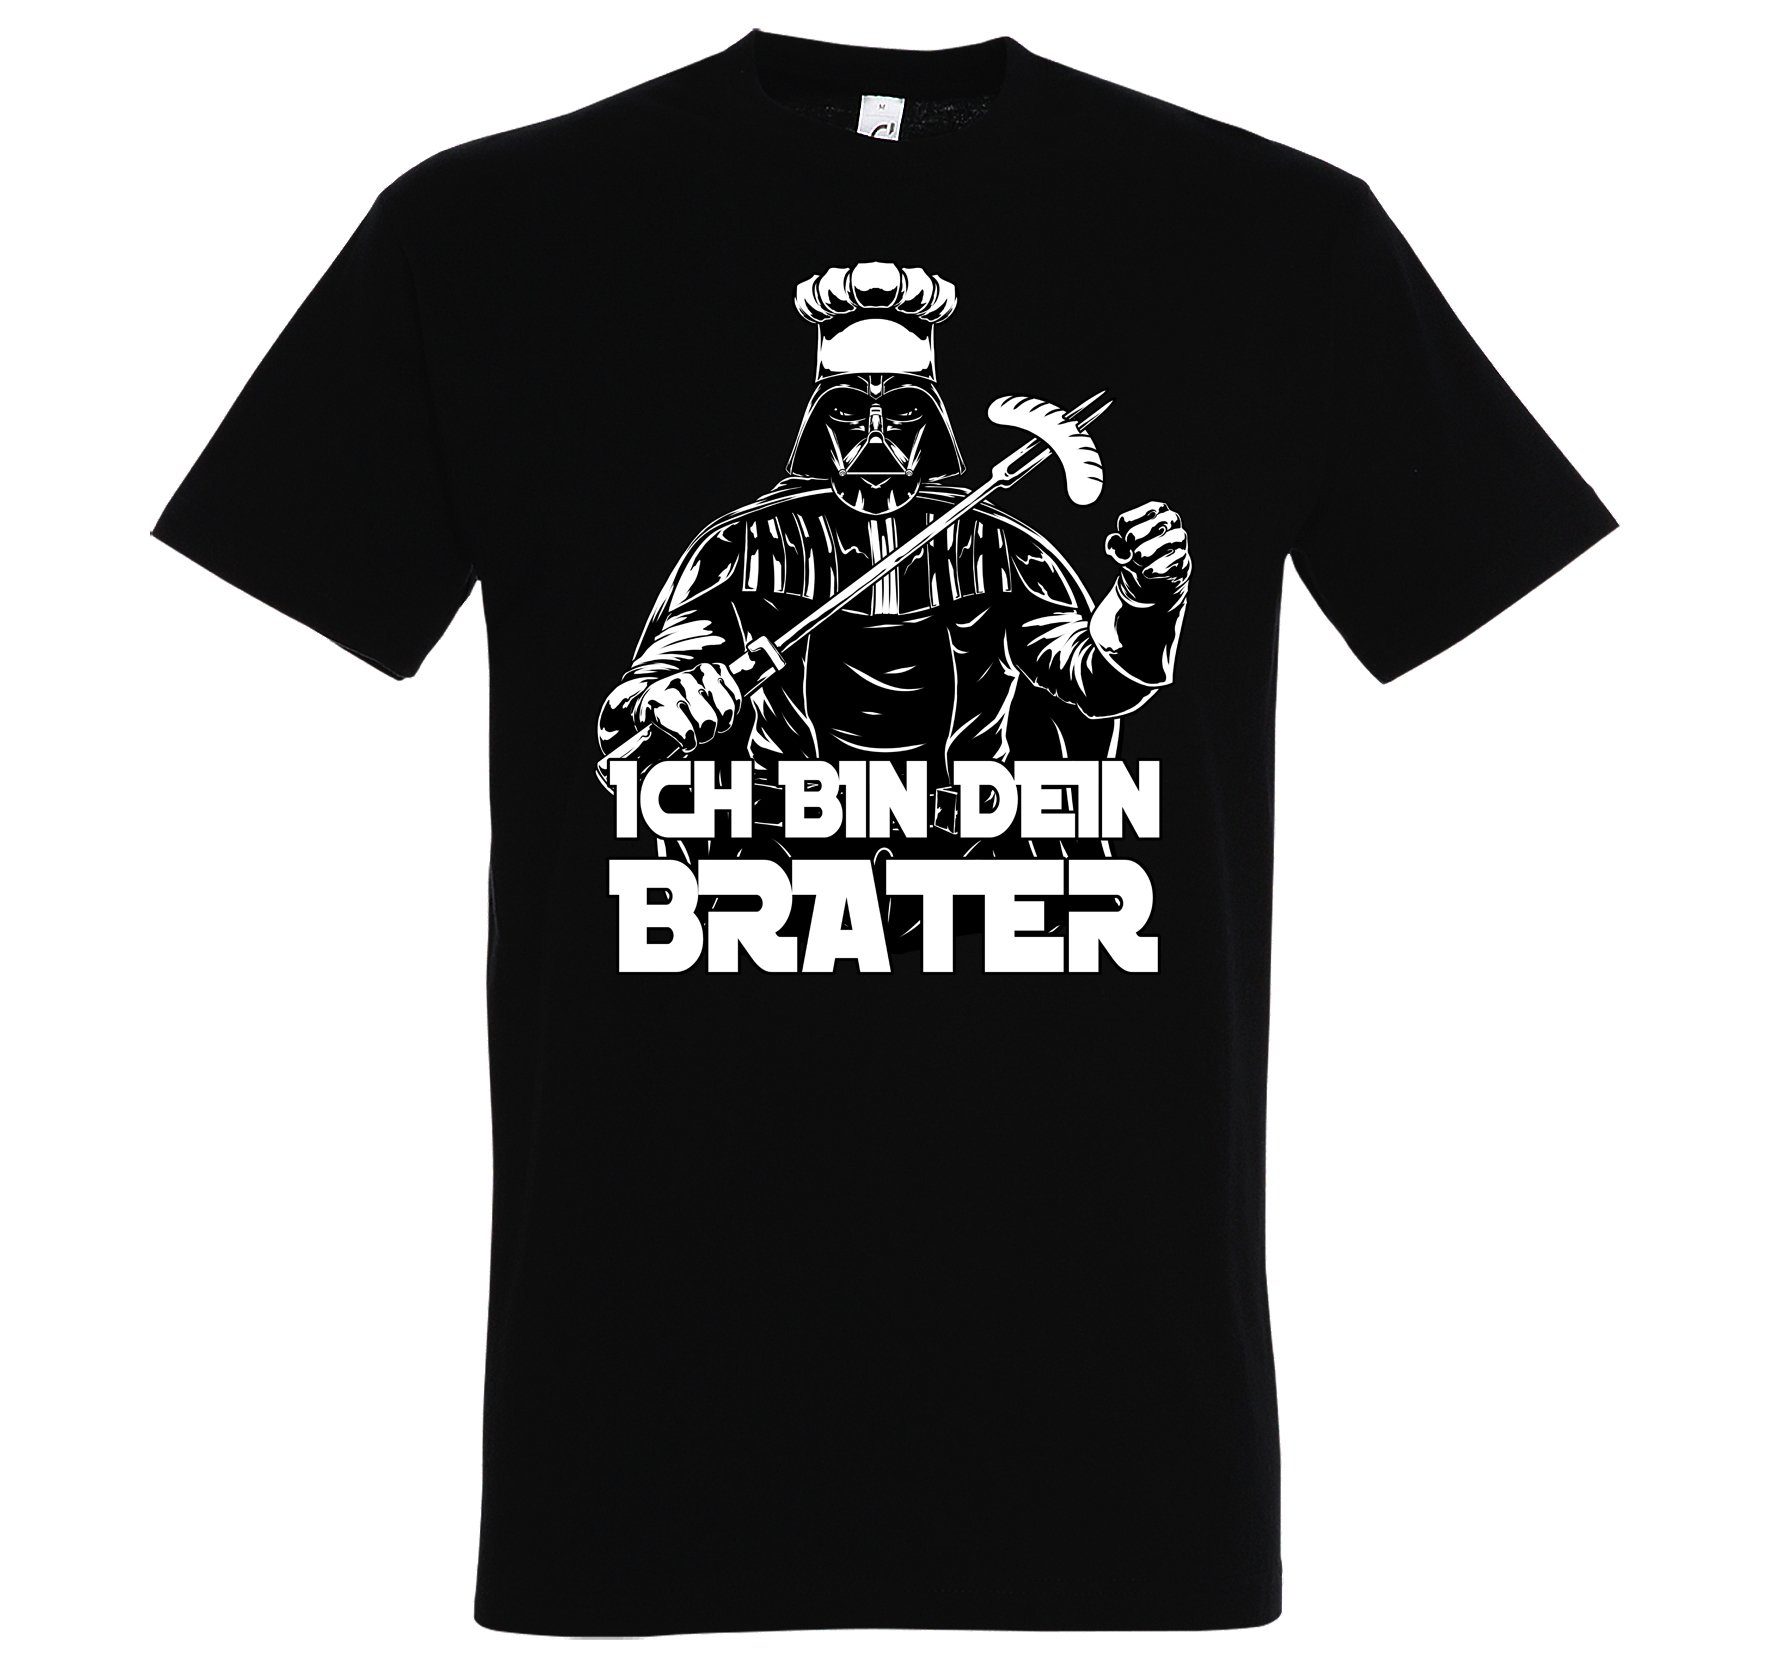 Youth Designz T-Shirt "Ich bin Brater" Herren T-Shirt mit lustigem Spruch Schwarz